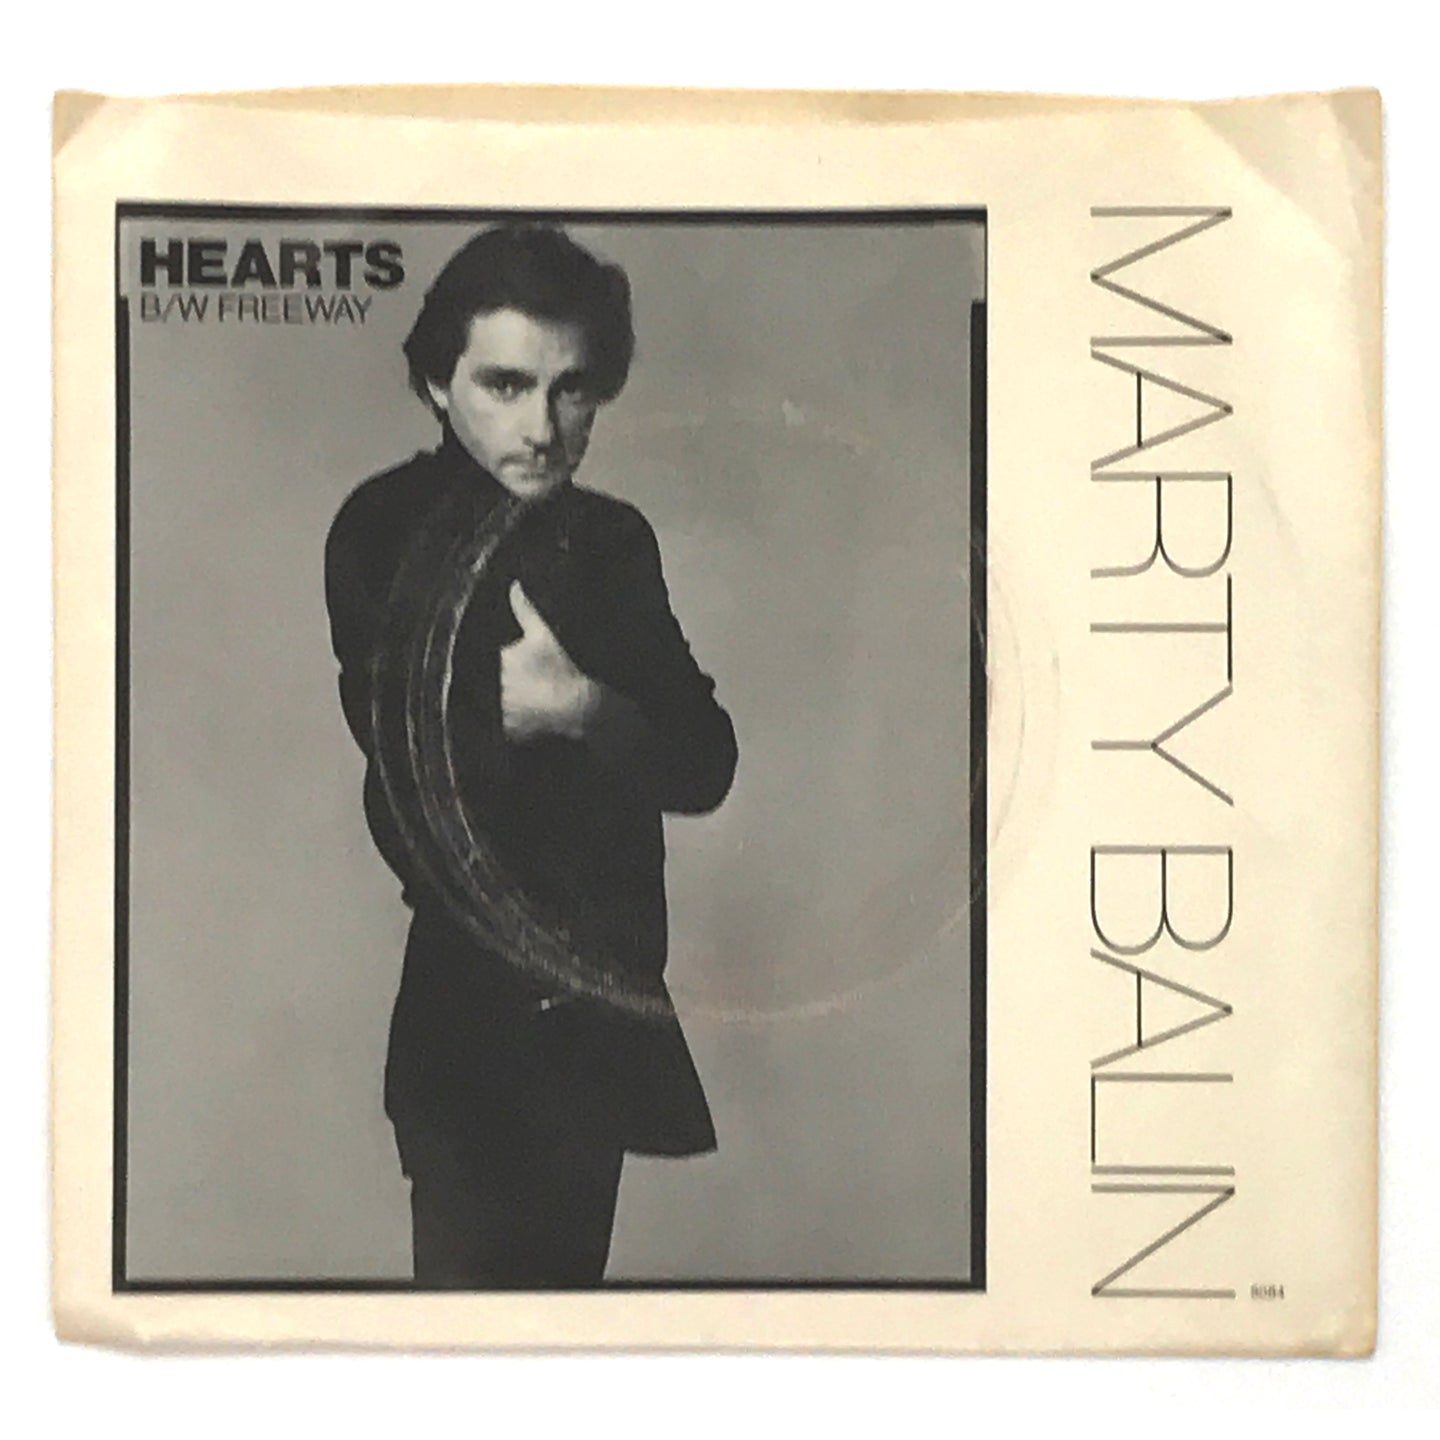 Marty Balin : HEARTS/ FREEWAY